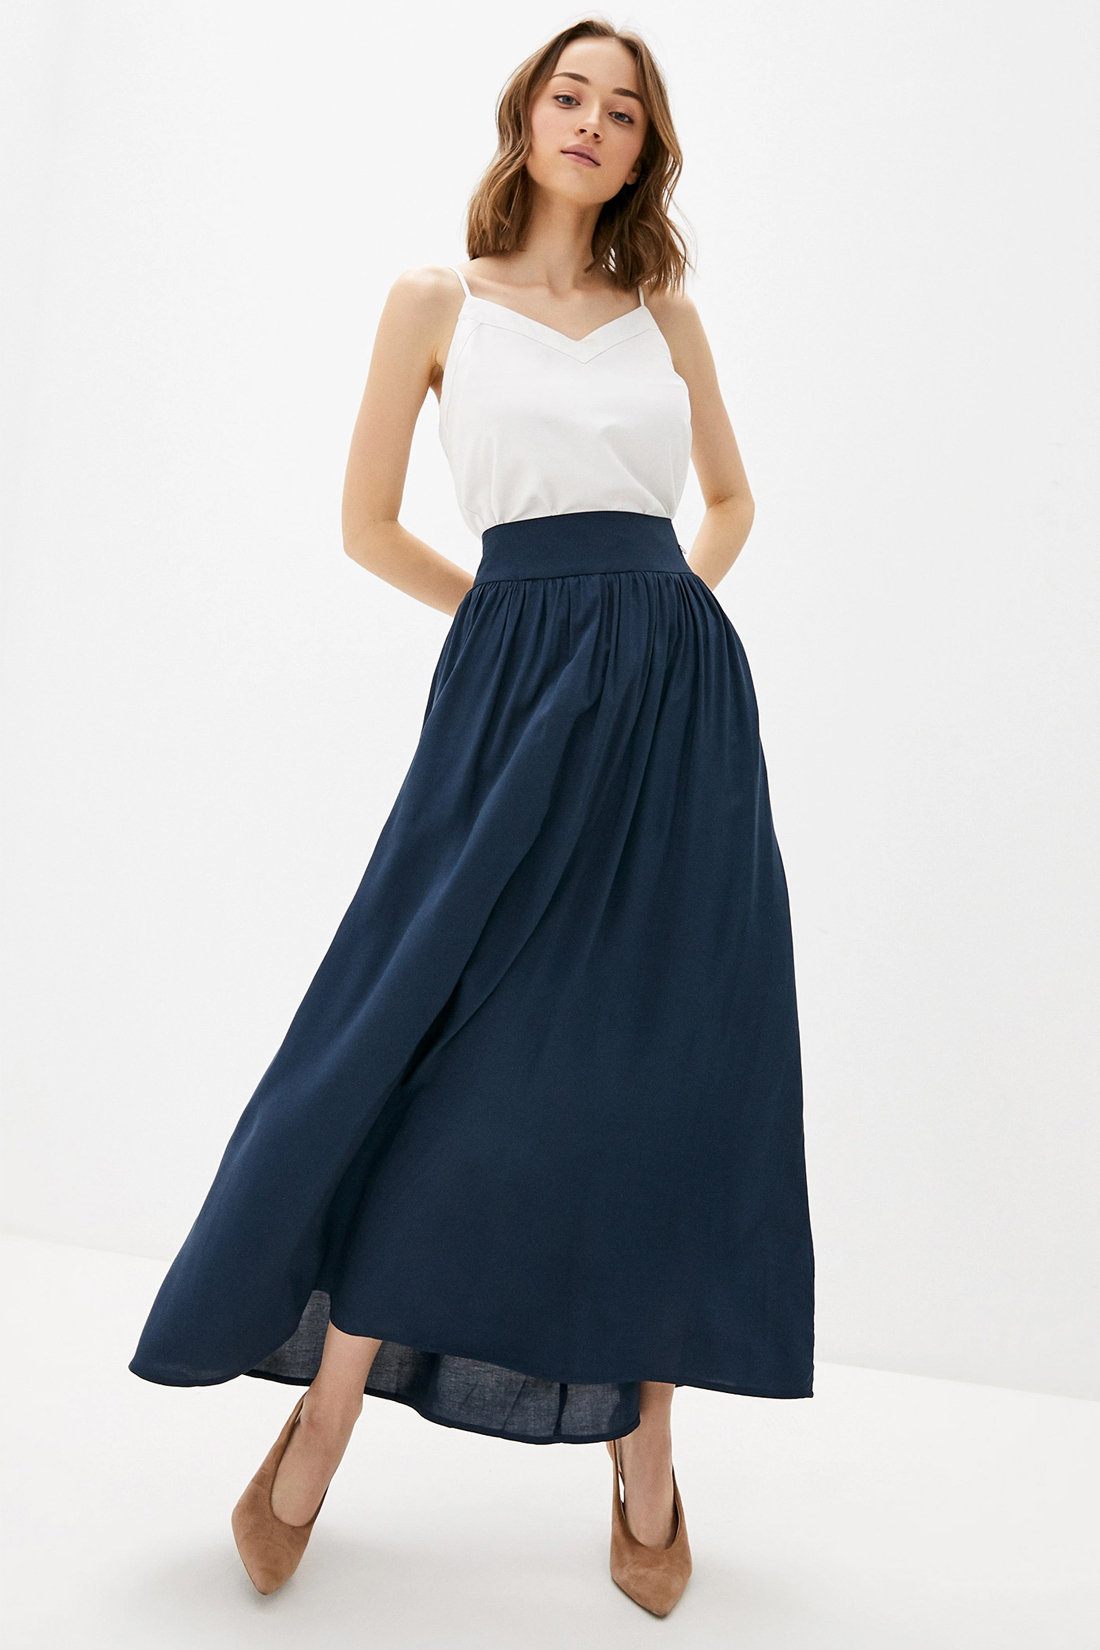 Длинная юбка на кокетке (арт. baon B470027), размер XS, цвет синий Длинная юбка на кокетке (арт. baon B470027) - фото 1